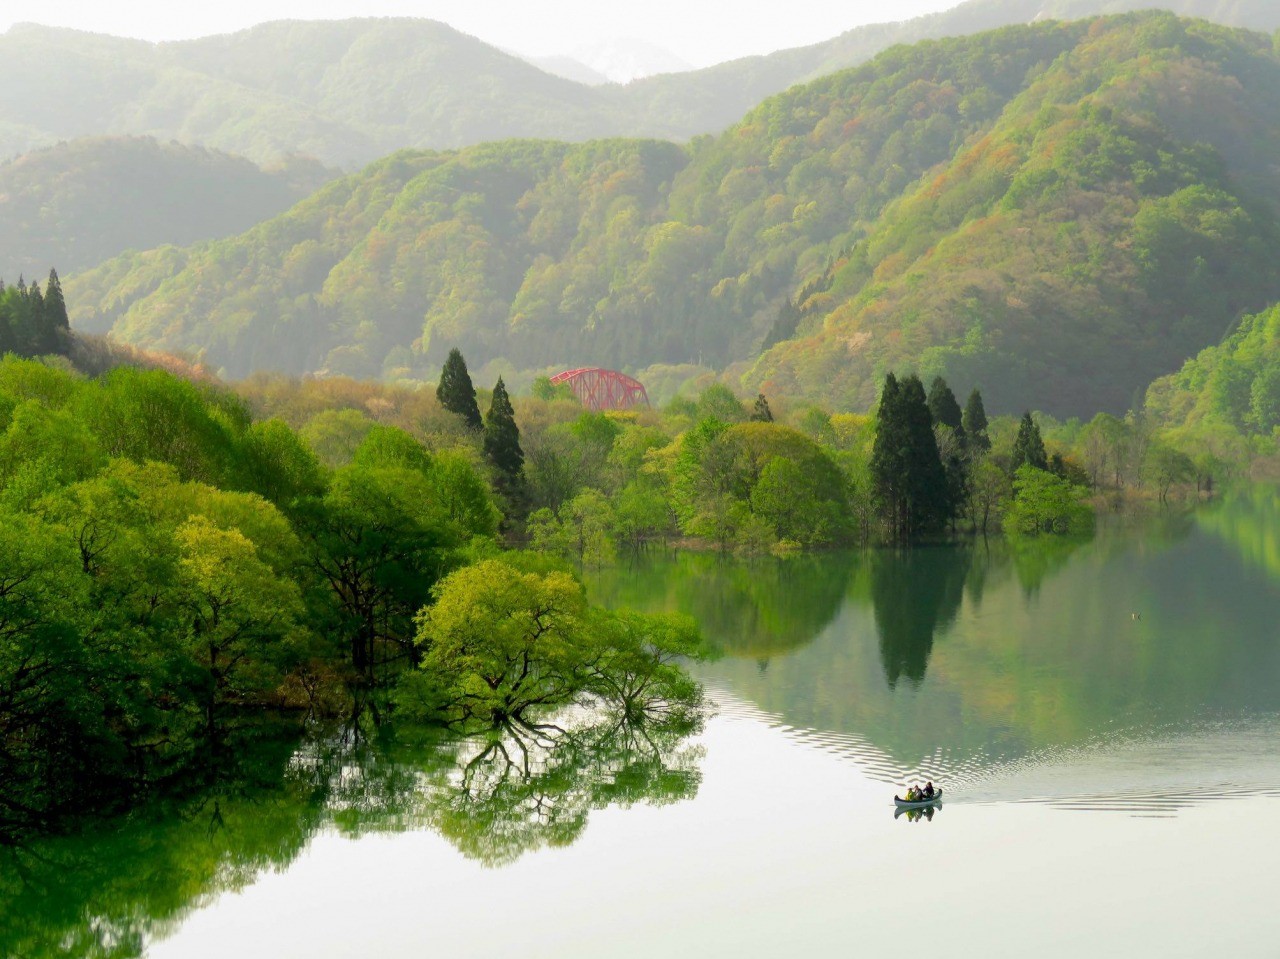 Lake Kinsyu Lake (canoe)